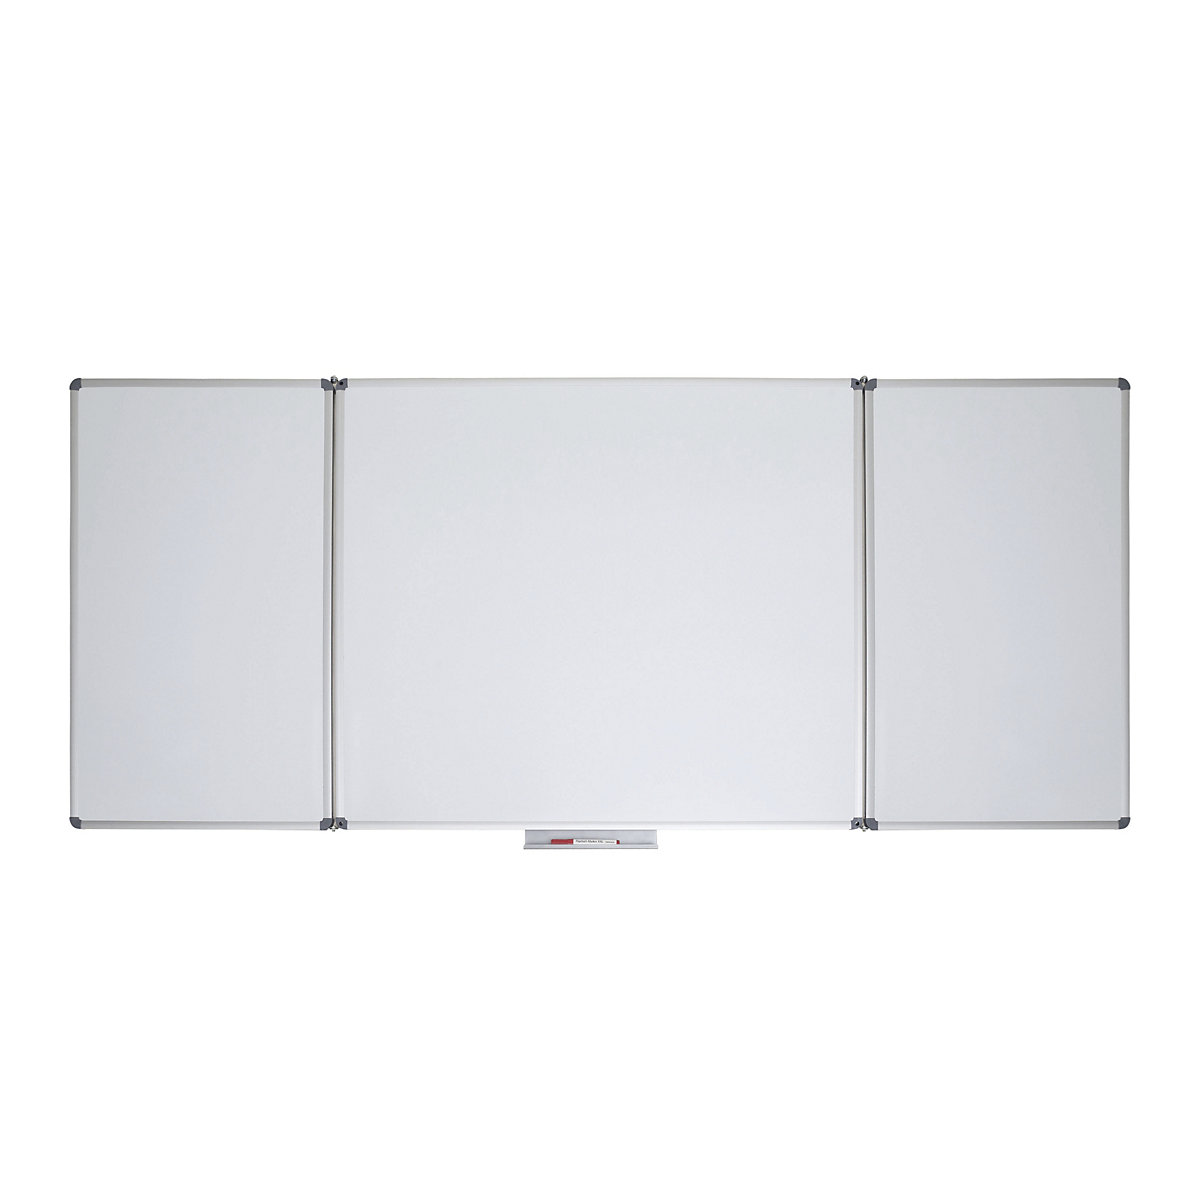 MAUL Whiteboard-Klapptafel, Stahlblech, beschichtet, BxH 1500 x 1000 mm